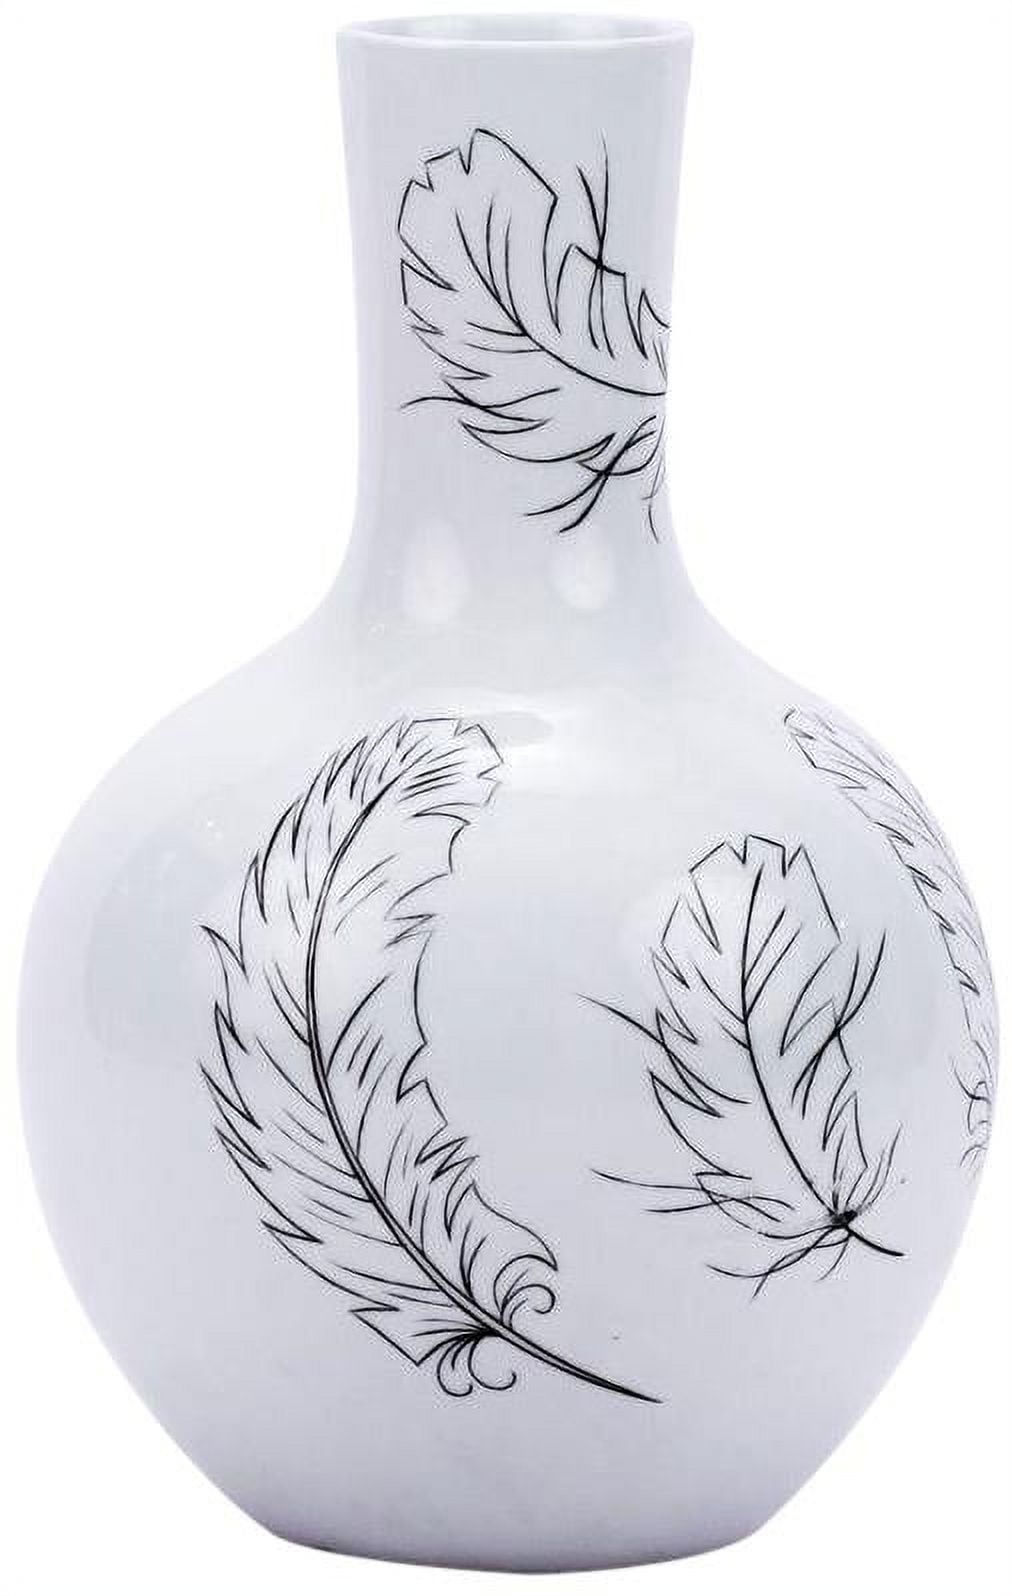 Vase Feathers Globular Round White Colors May Vary Black Varying